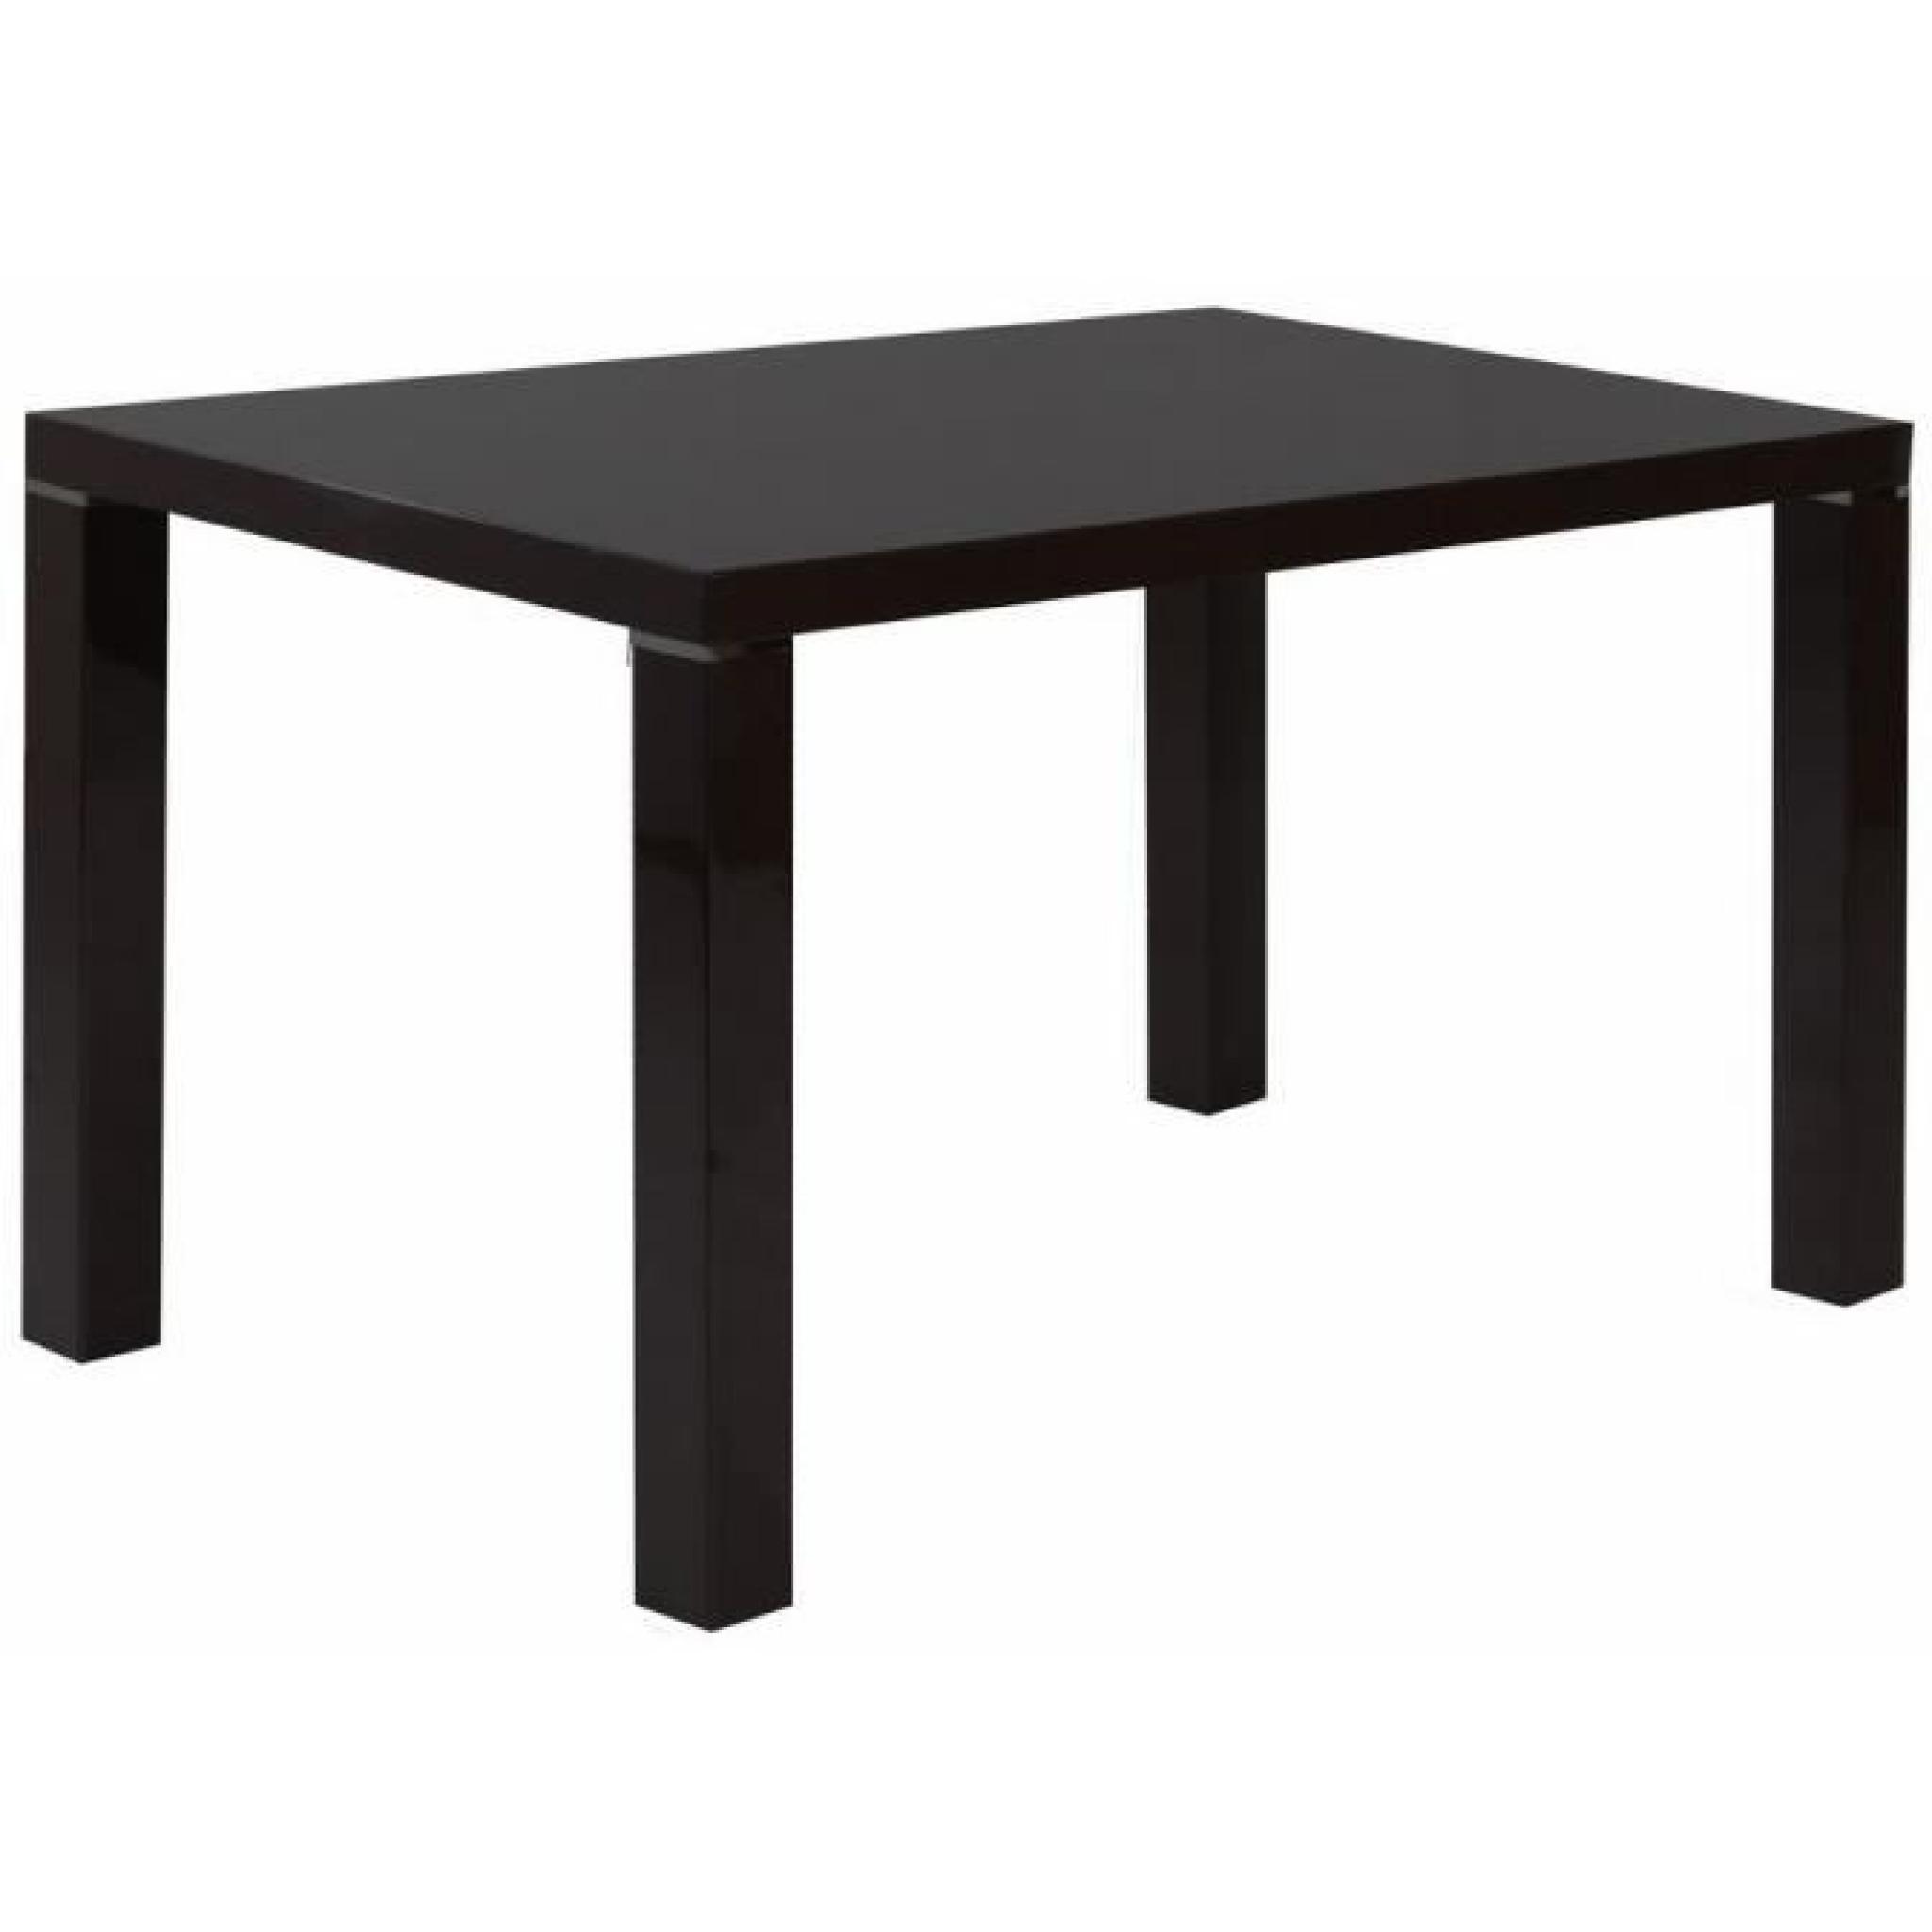 Table de cuisine 130 cm rectangulaire noir design